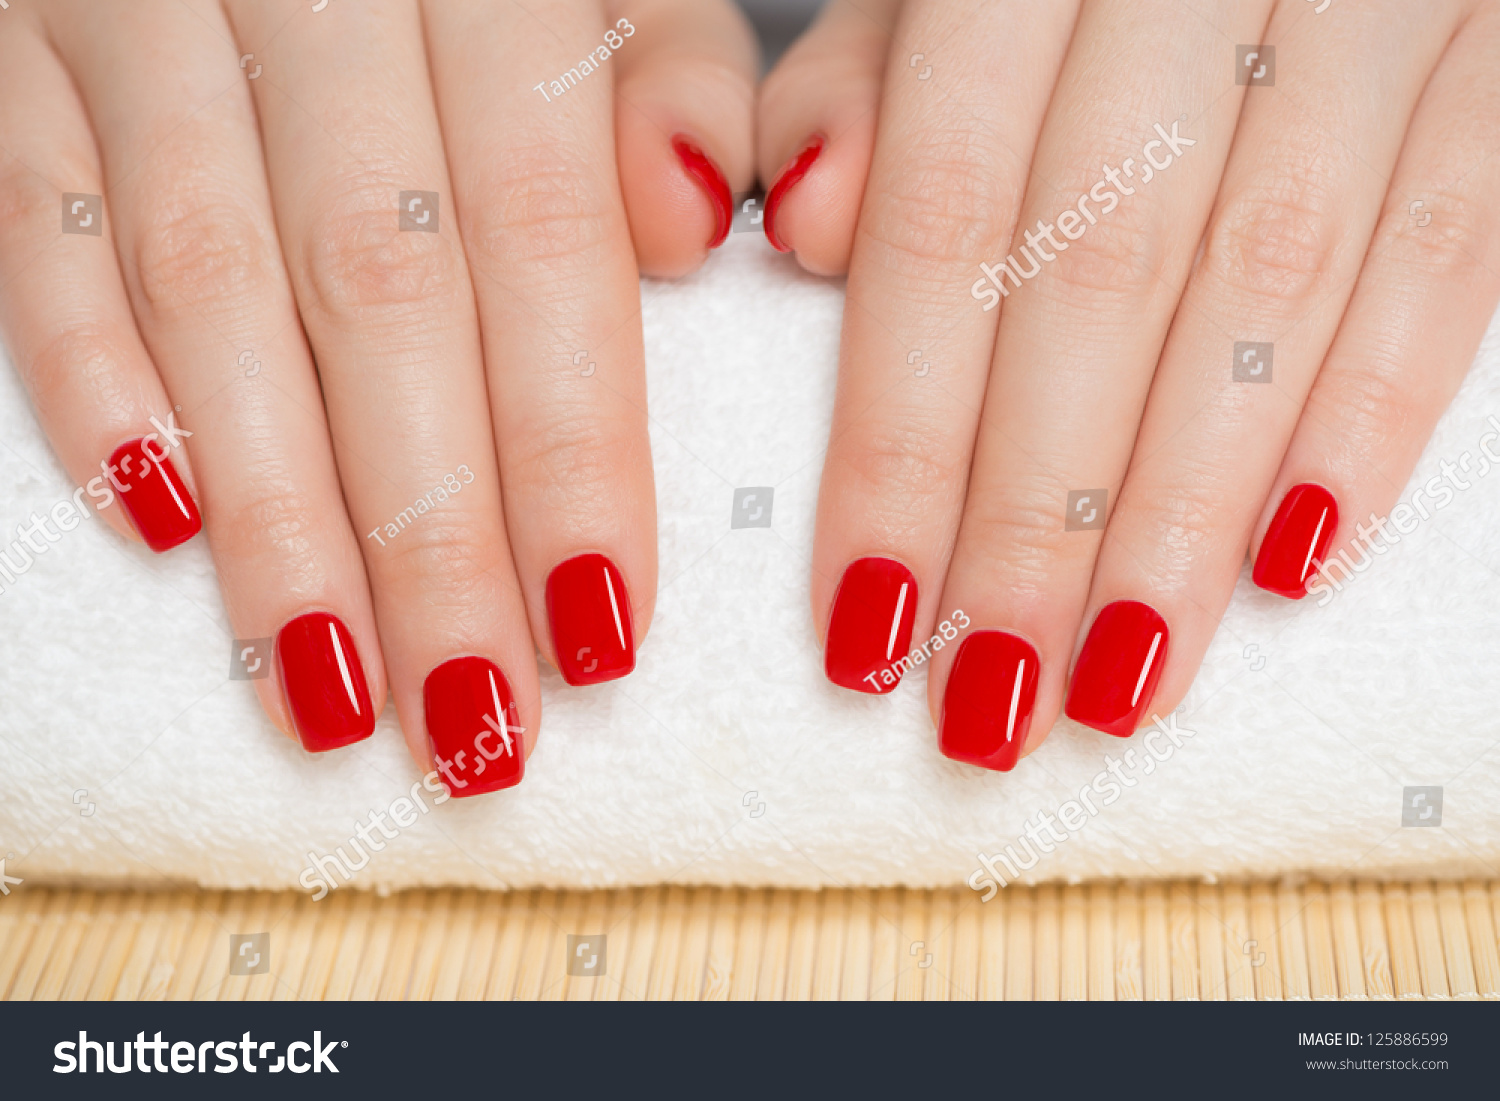 Красный маникюр на короткие ногти квадратной формы